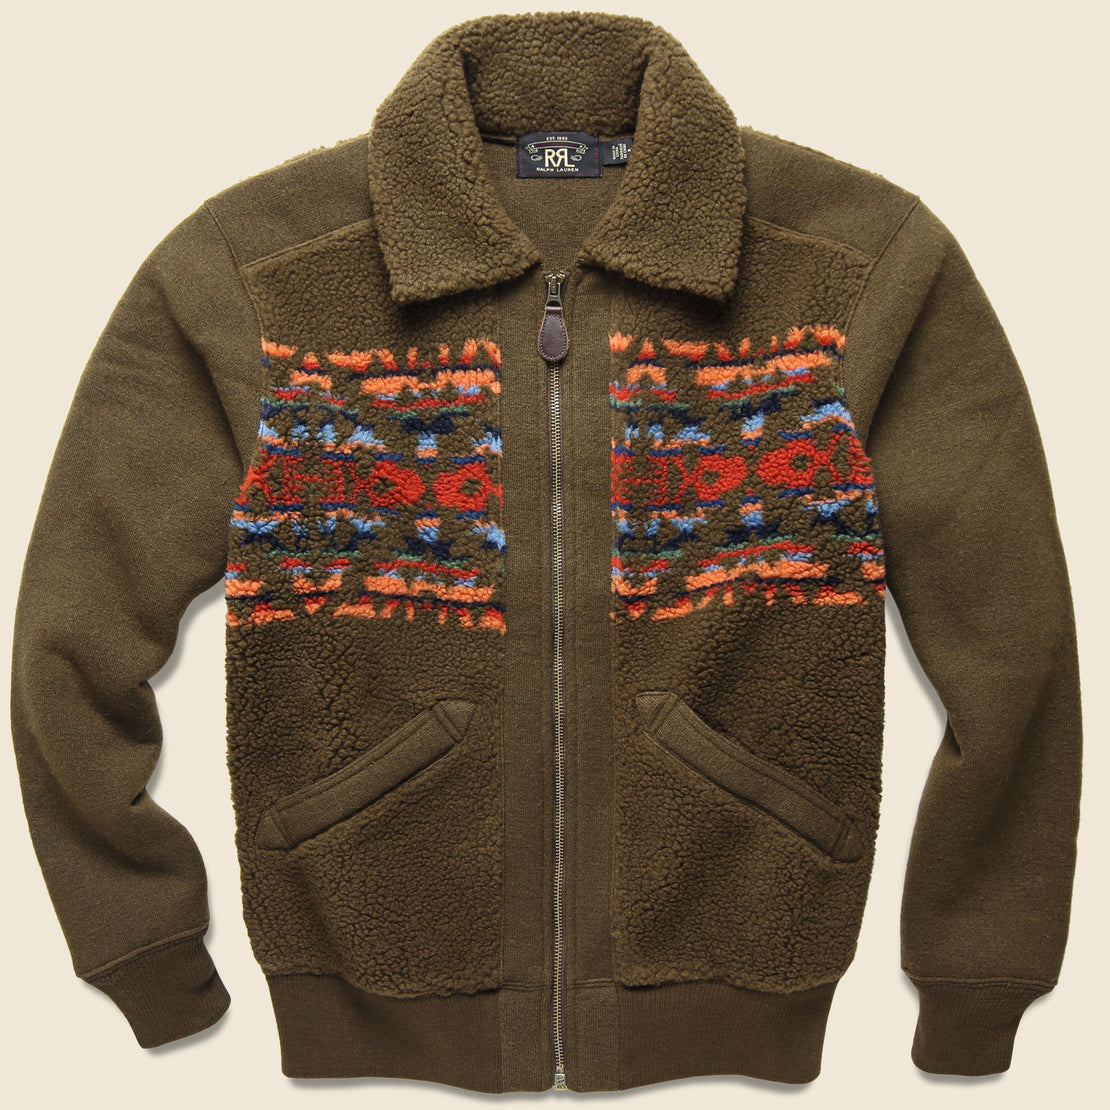 RRL Printed Fleece Jacket - Brown/Multi